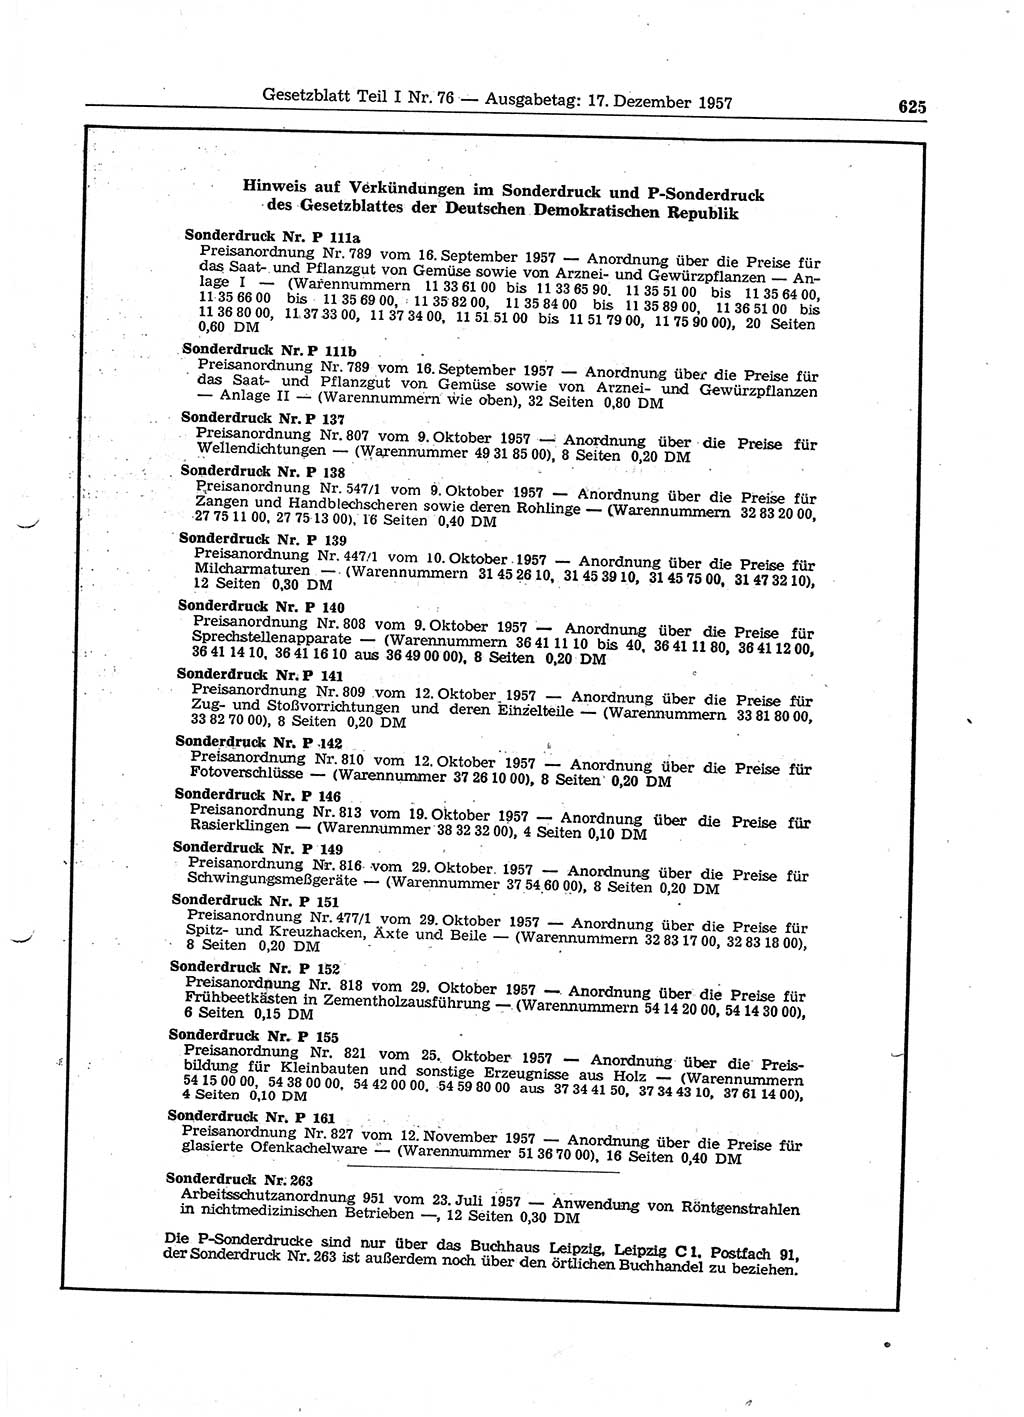 Gesetzblatt (GBl.) der Deutschen Demokratischen Republik (DDR) Teil Ⅰ 1957, Seite 625 (GBl. DDR Ⅰ 1957, S. 625)